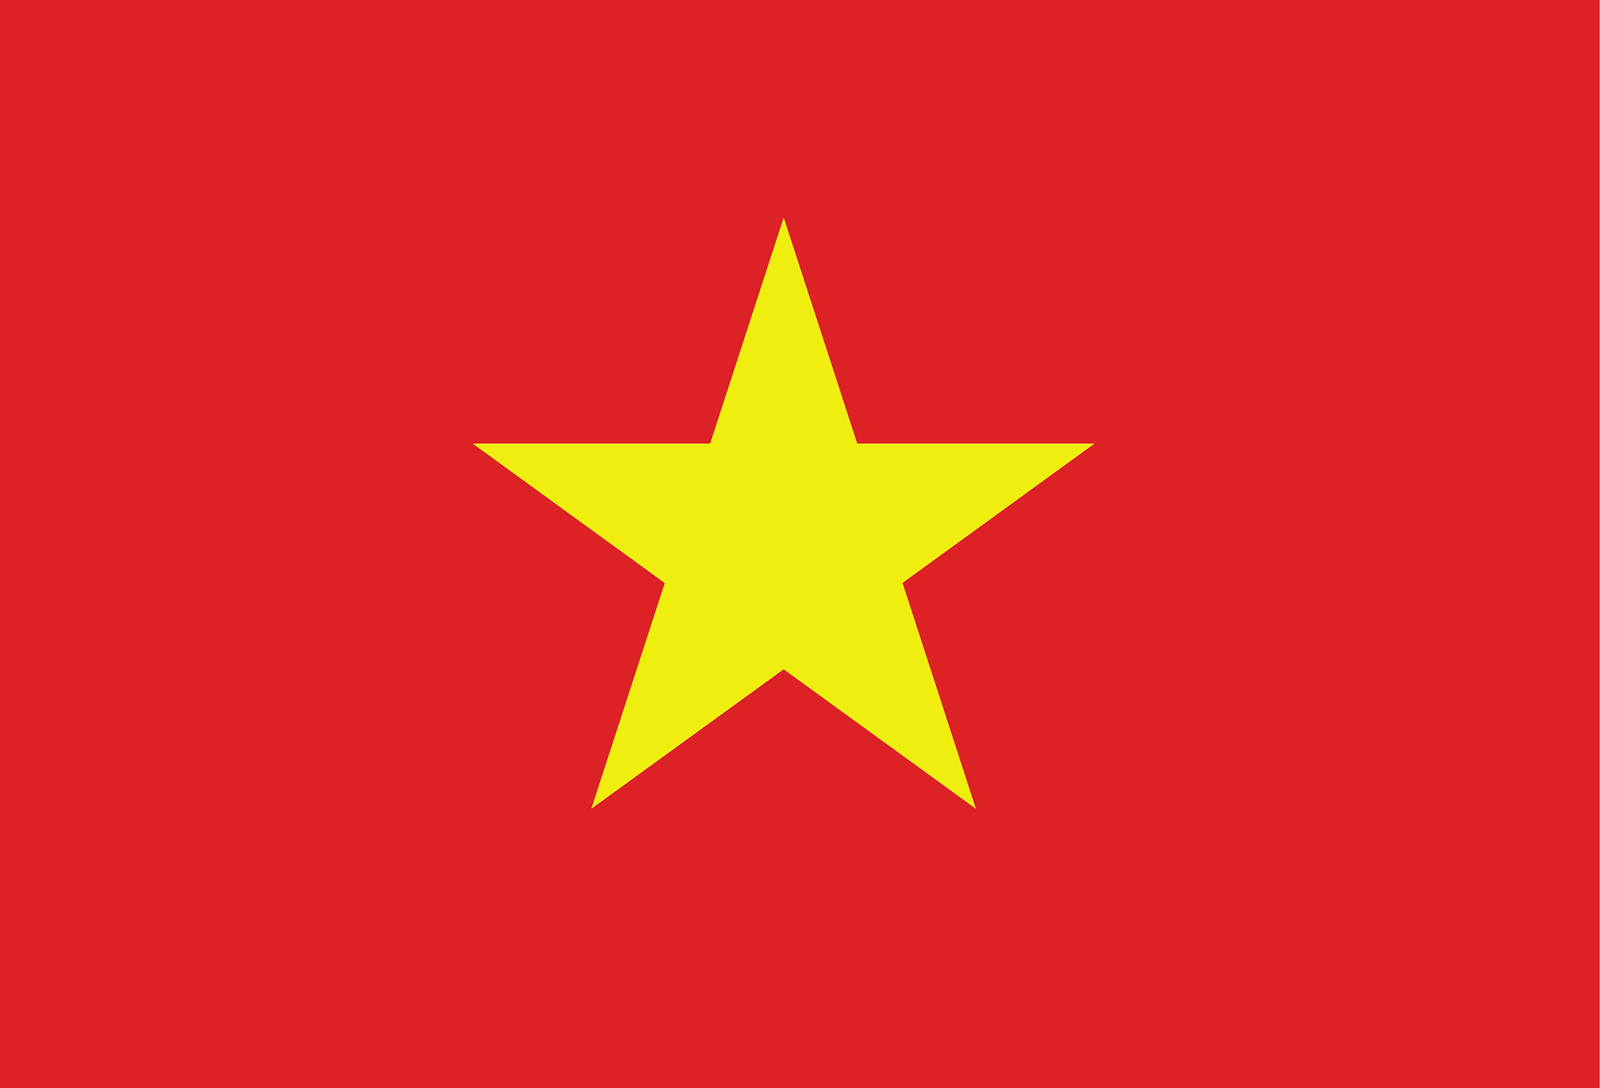 Vietnam.png